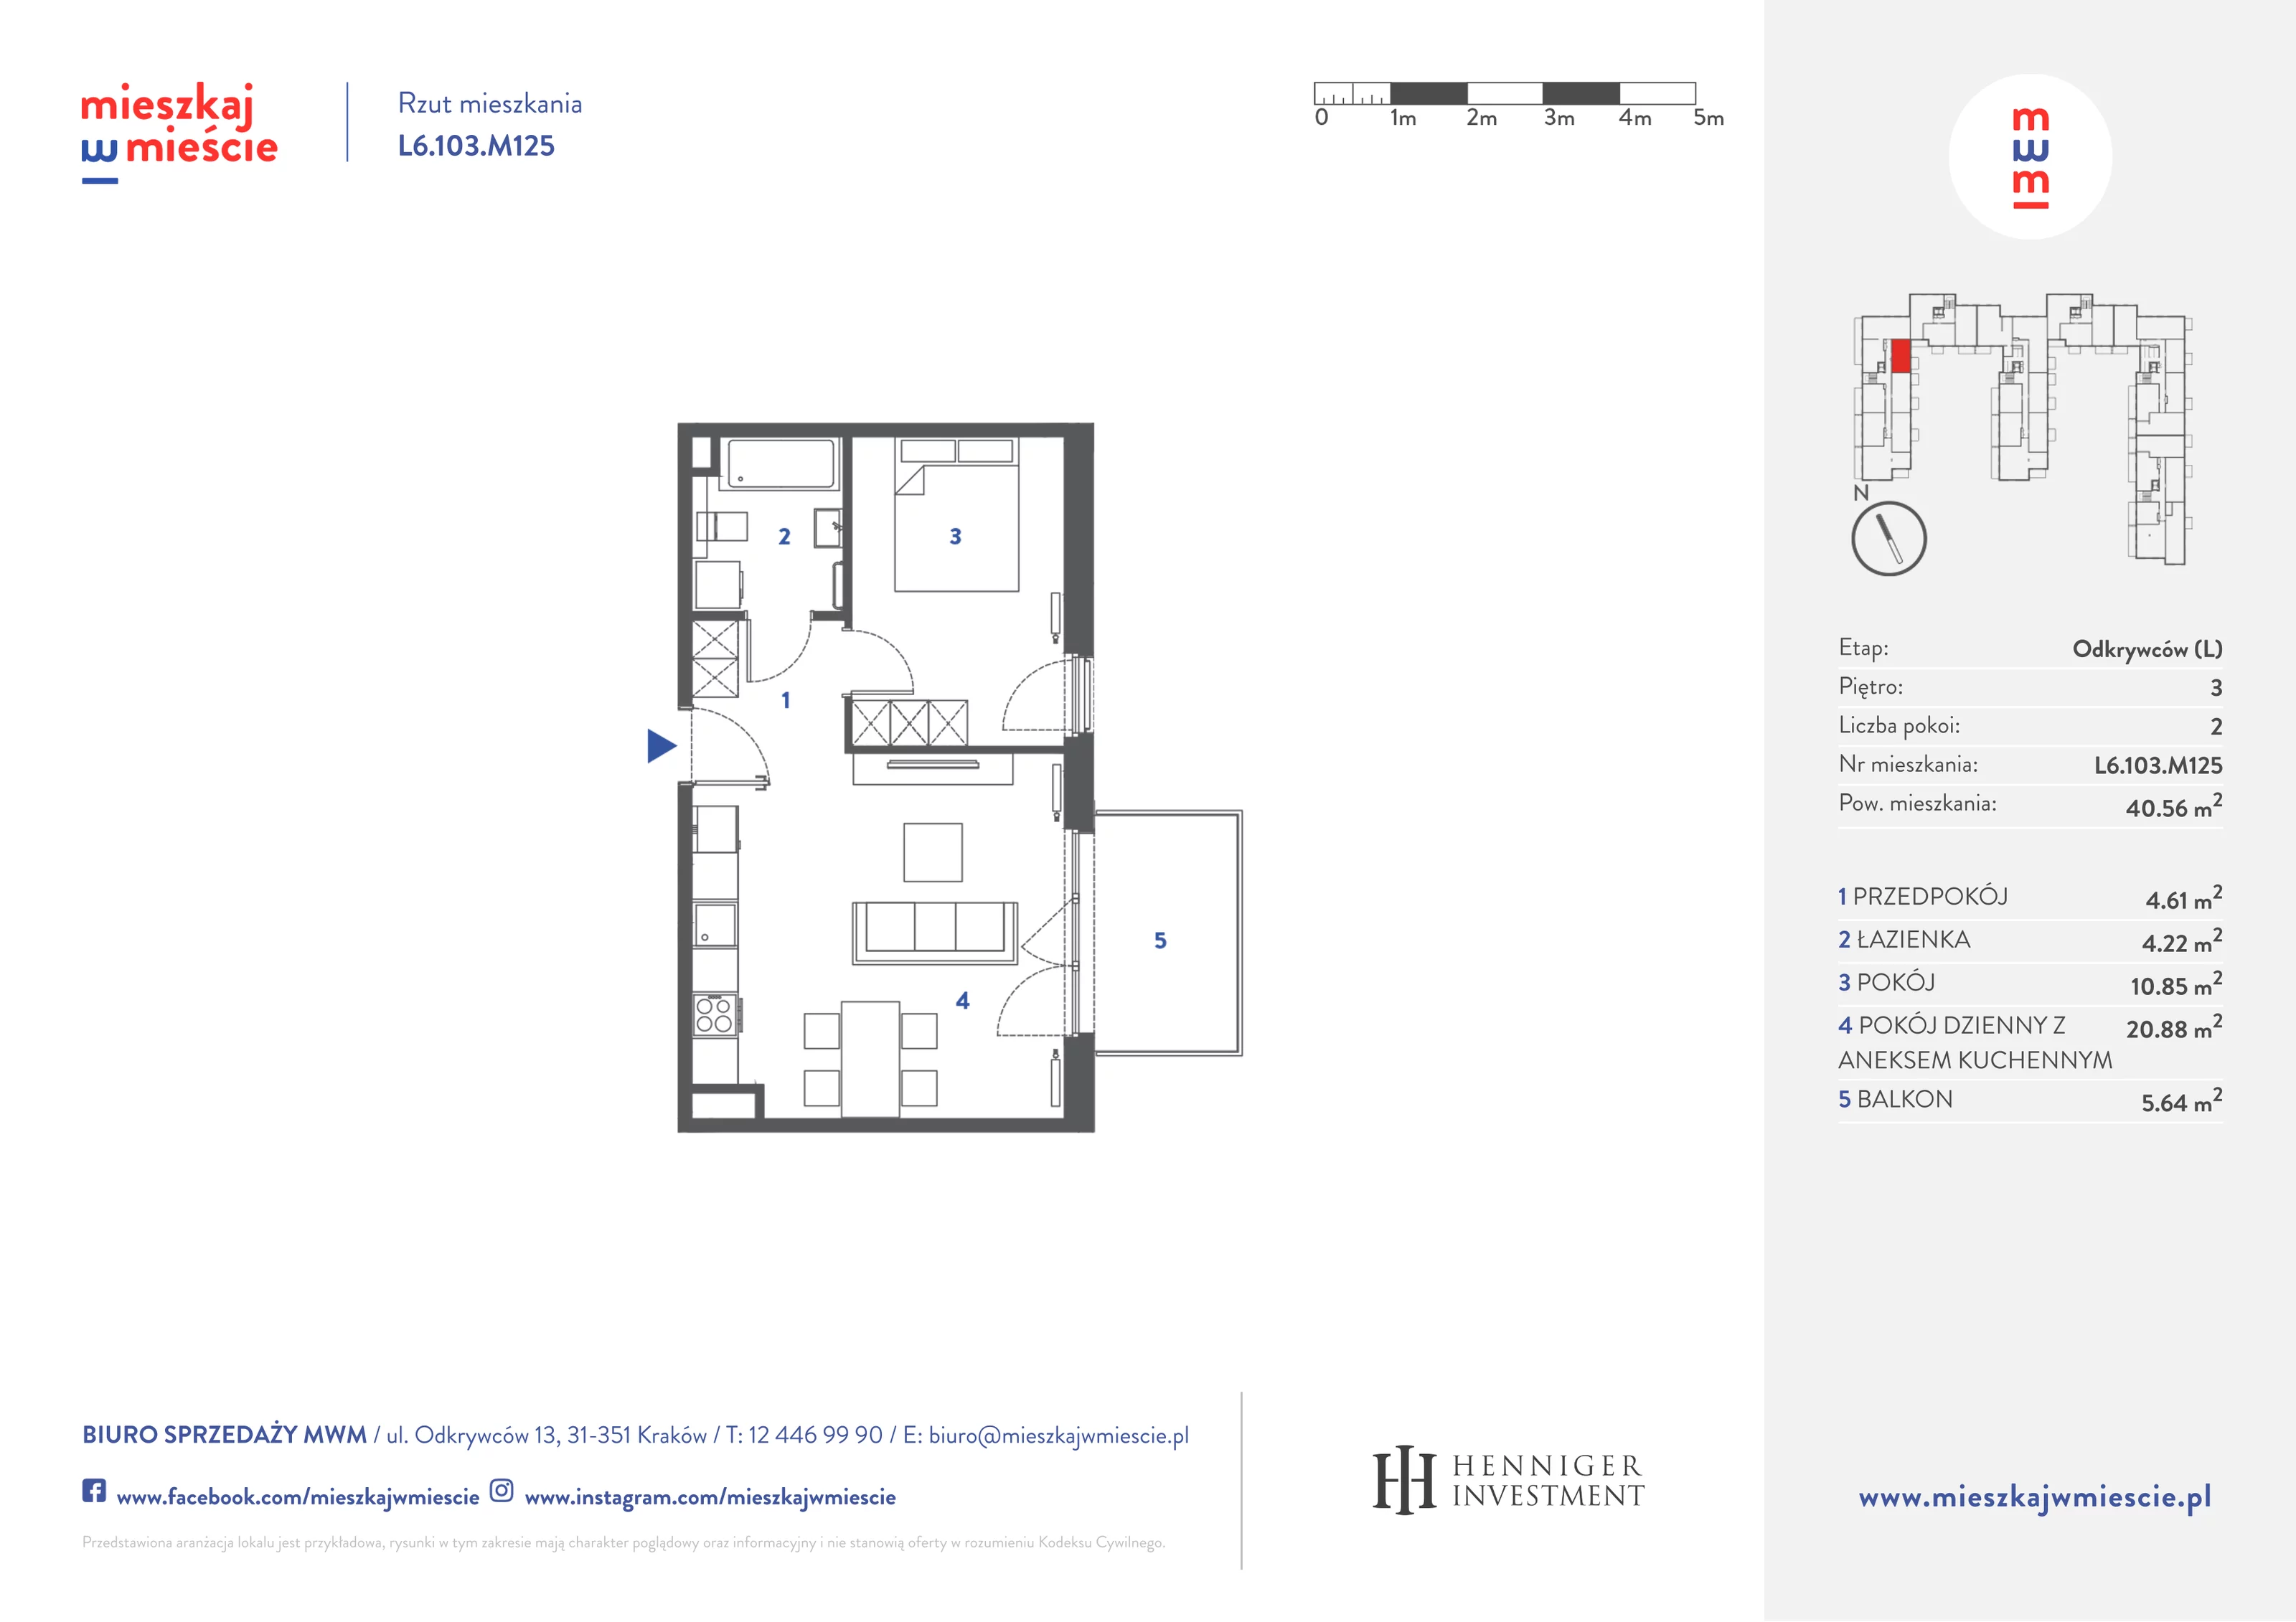 Mieszkanie 40,72 m², piętro 3, oferta nr L6.103.M125, Mieszkaj w Mieście - Odkrywców L, Kraków, Bronowice, ul. Wizjonerów